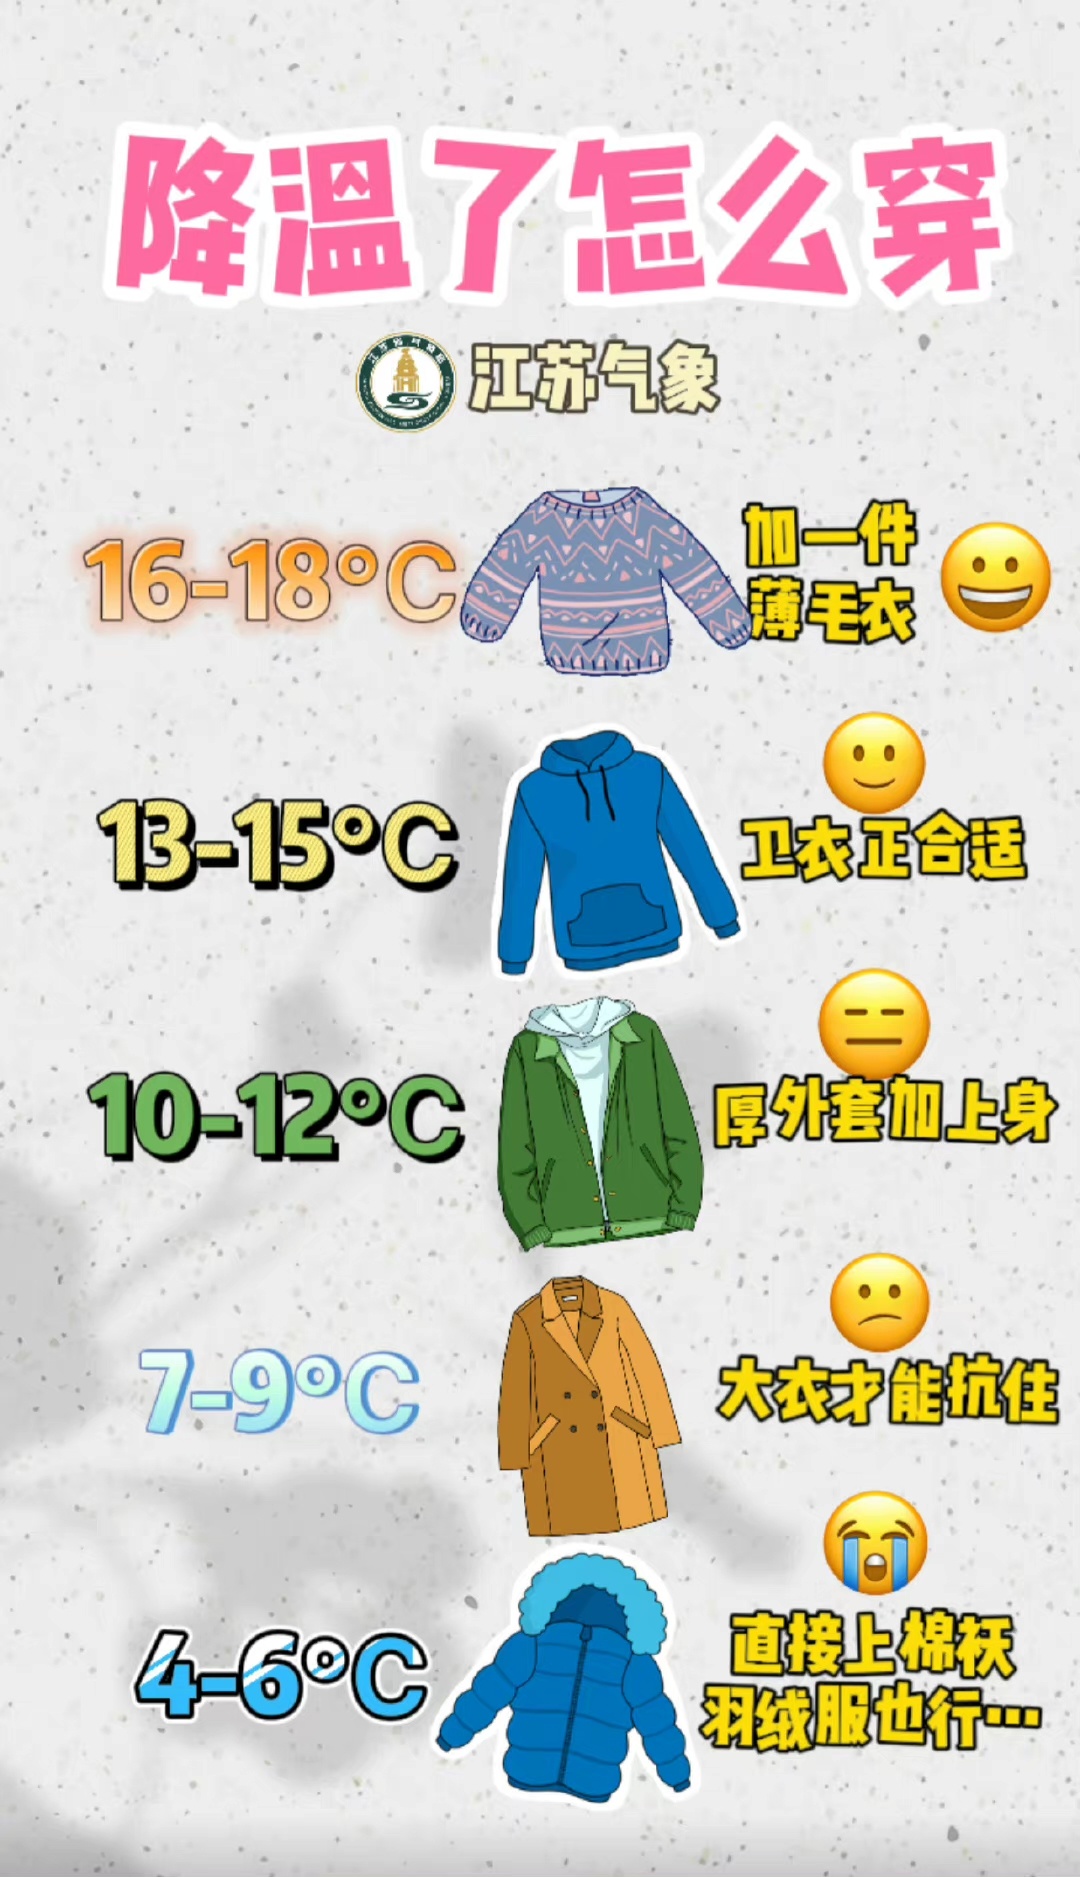 体感温度穿衣对照表图片